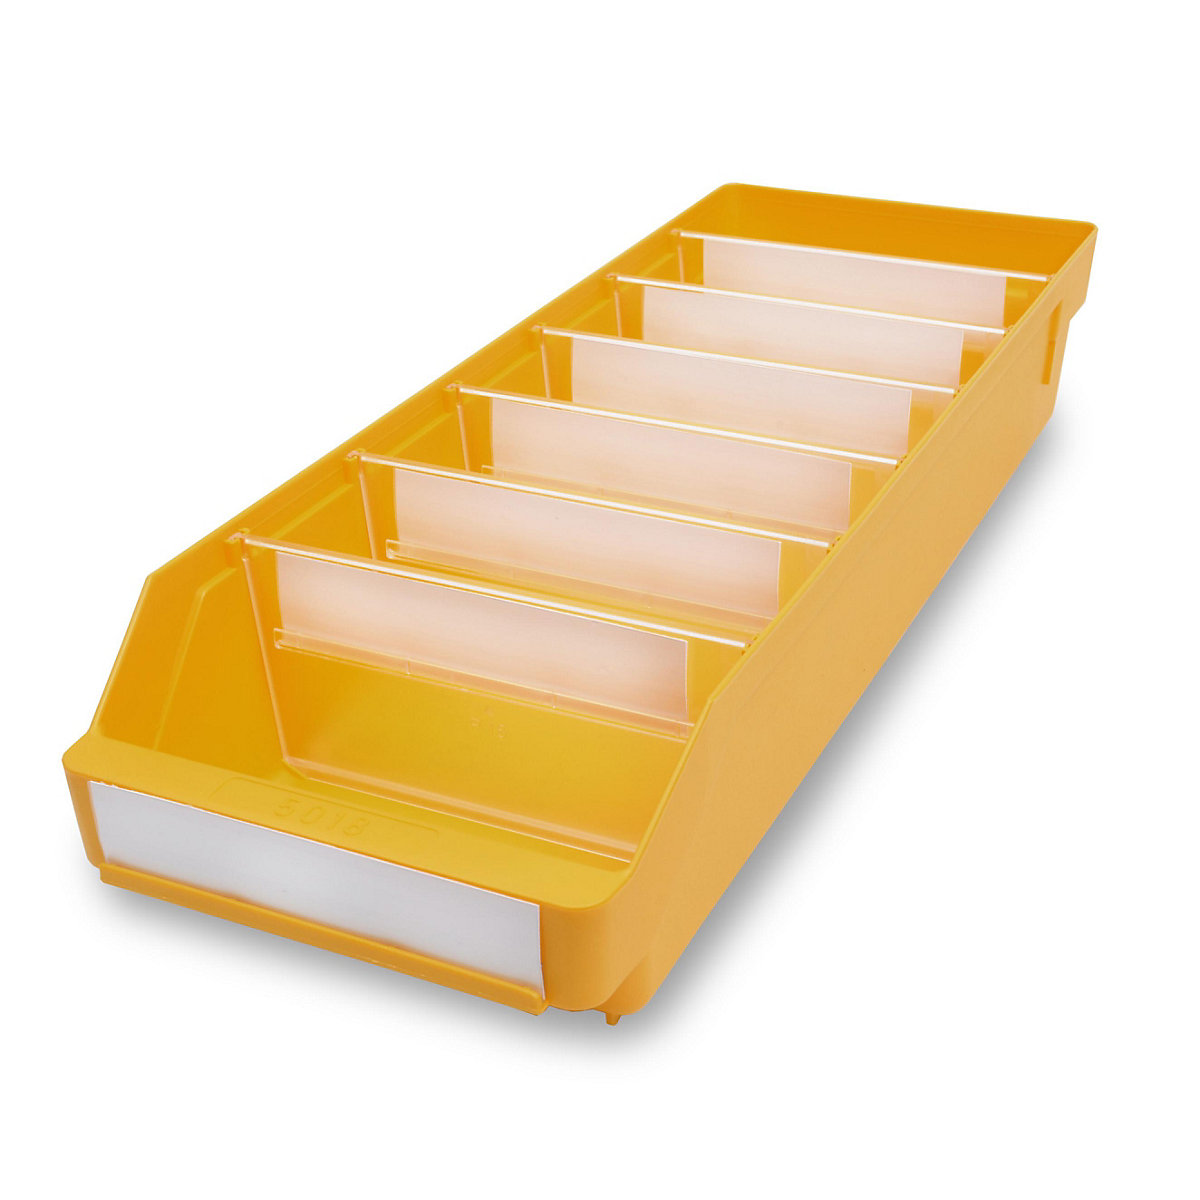 STEMO Regalkasten aus hochschlagfestem Polypropylen, gelb, LxBxH 500 x 180 x 95 mm, VE 20 Stk